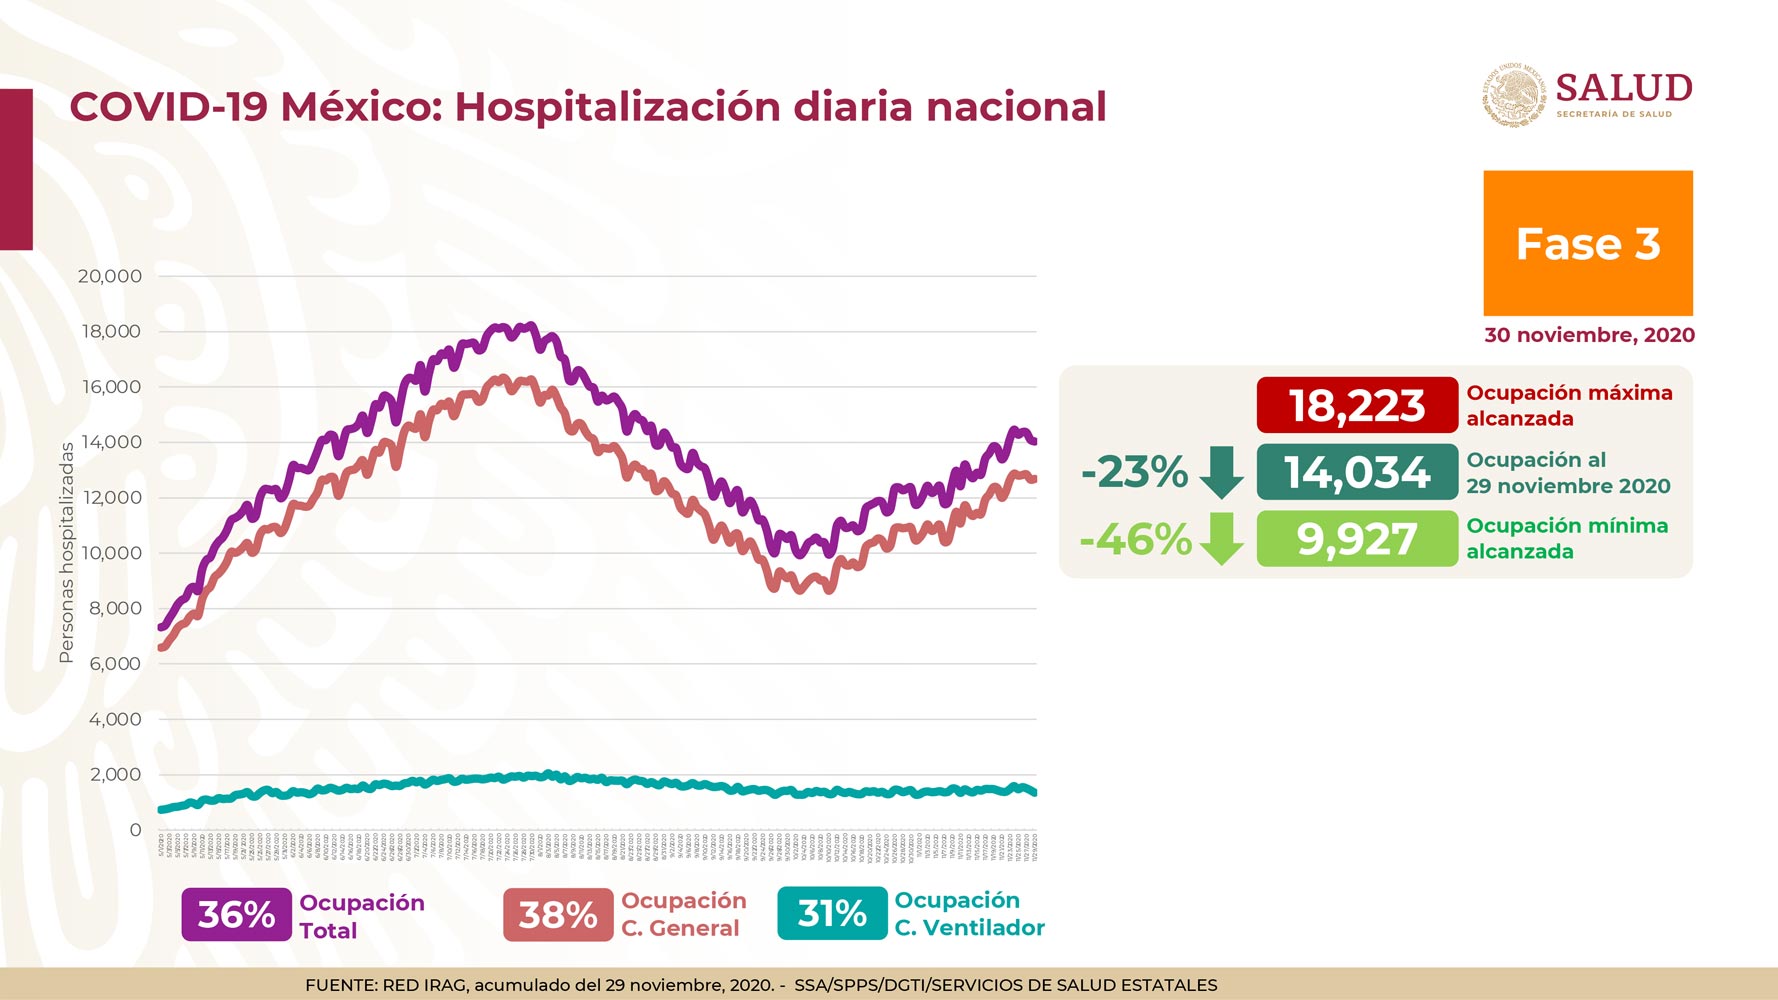 La ocupación hospitalaria hasta el 29 de noviembre de 2020 se encontró 23 puntos abajo del máximo histórico (Foto: Ssa)